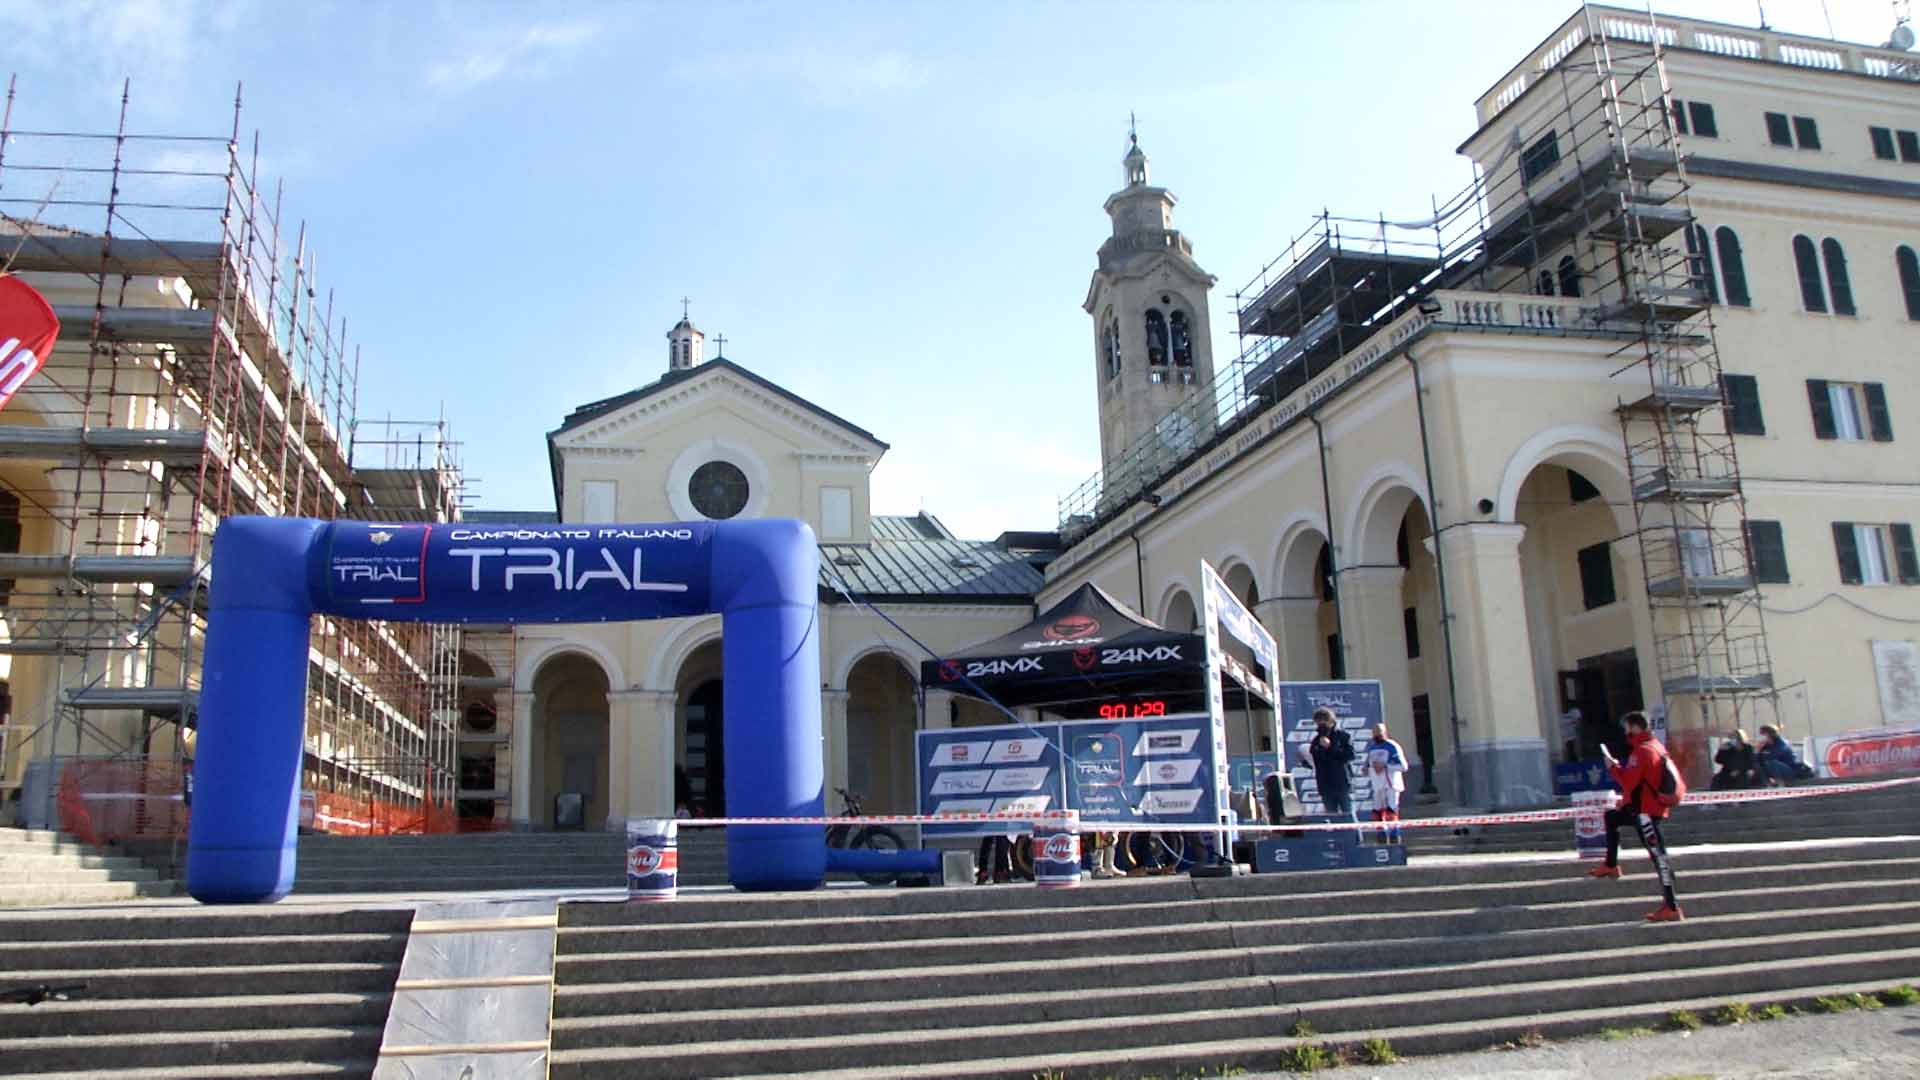 1^  Campionato Italiano Trial 2021 a Madonna della Guardia (GE)